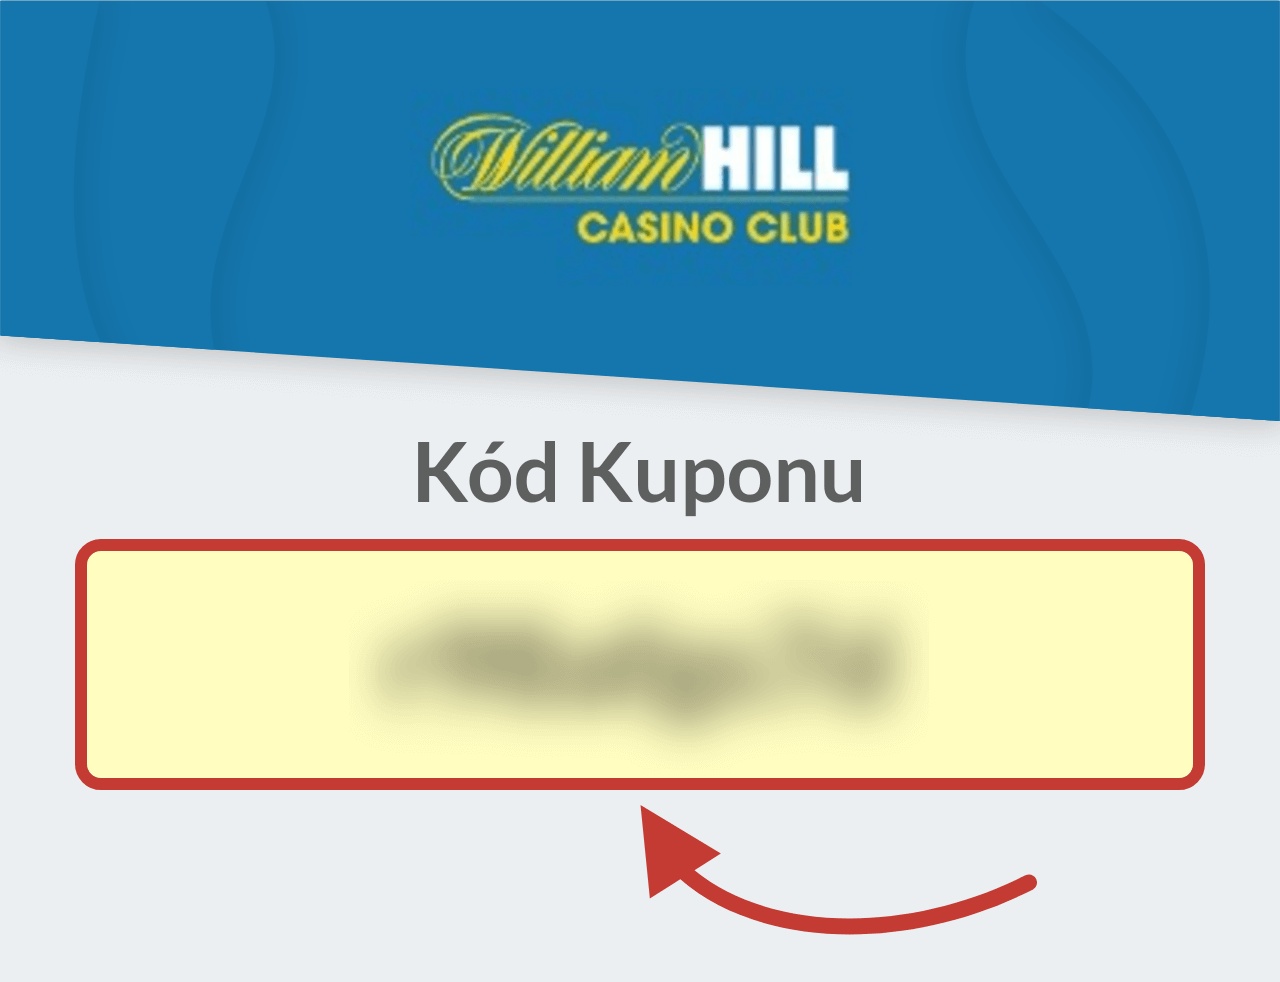 William Hill Casino Club Kód Kuponu